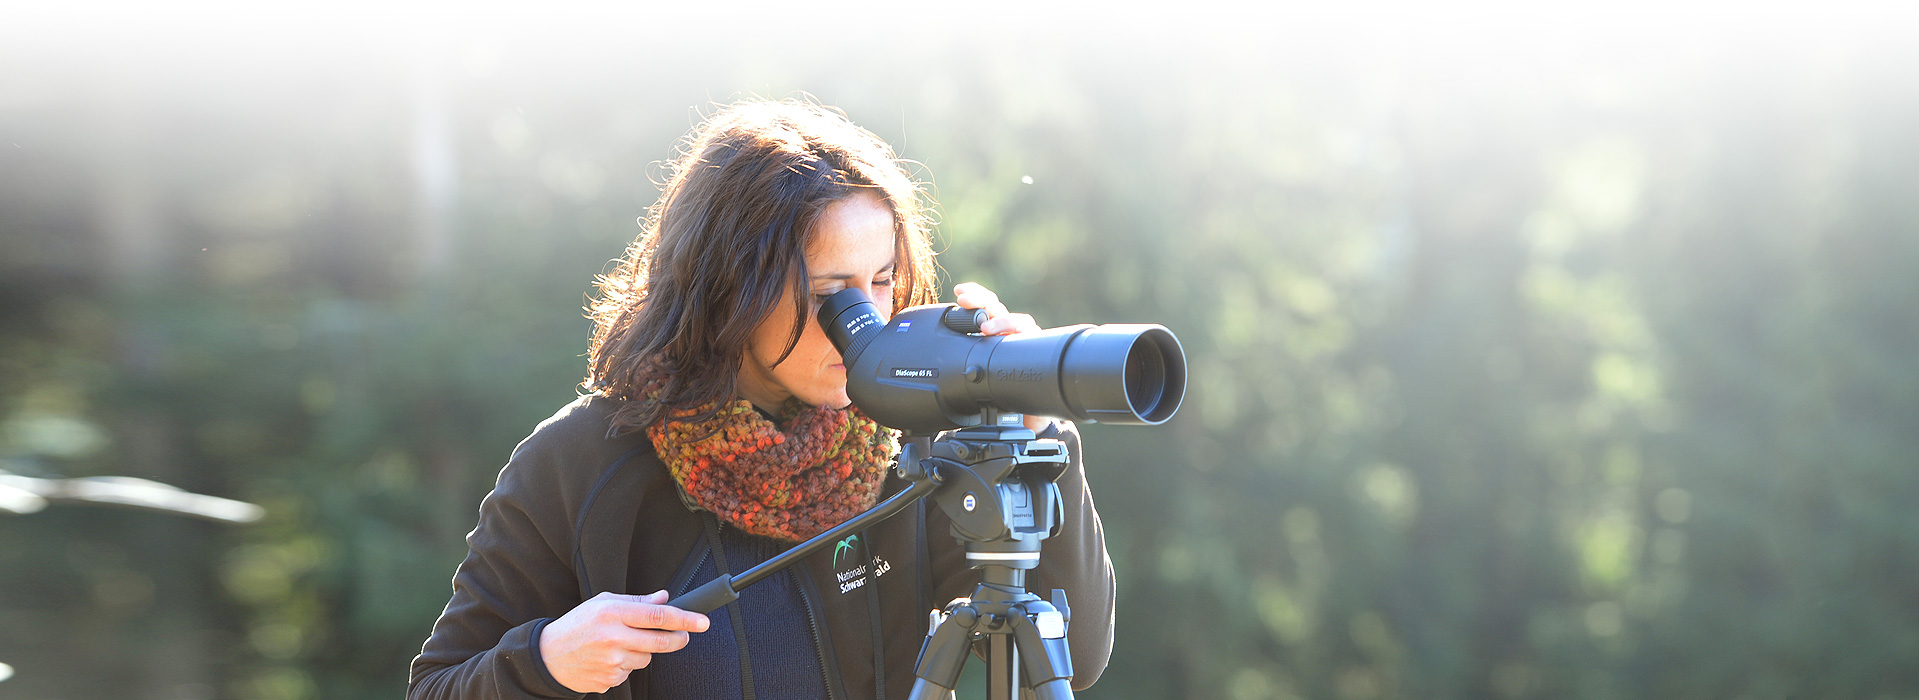 Eine Frau schaut konzentriert durch ein Teleskop, welches auf einem Stativ befestigt ist. 